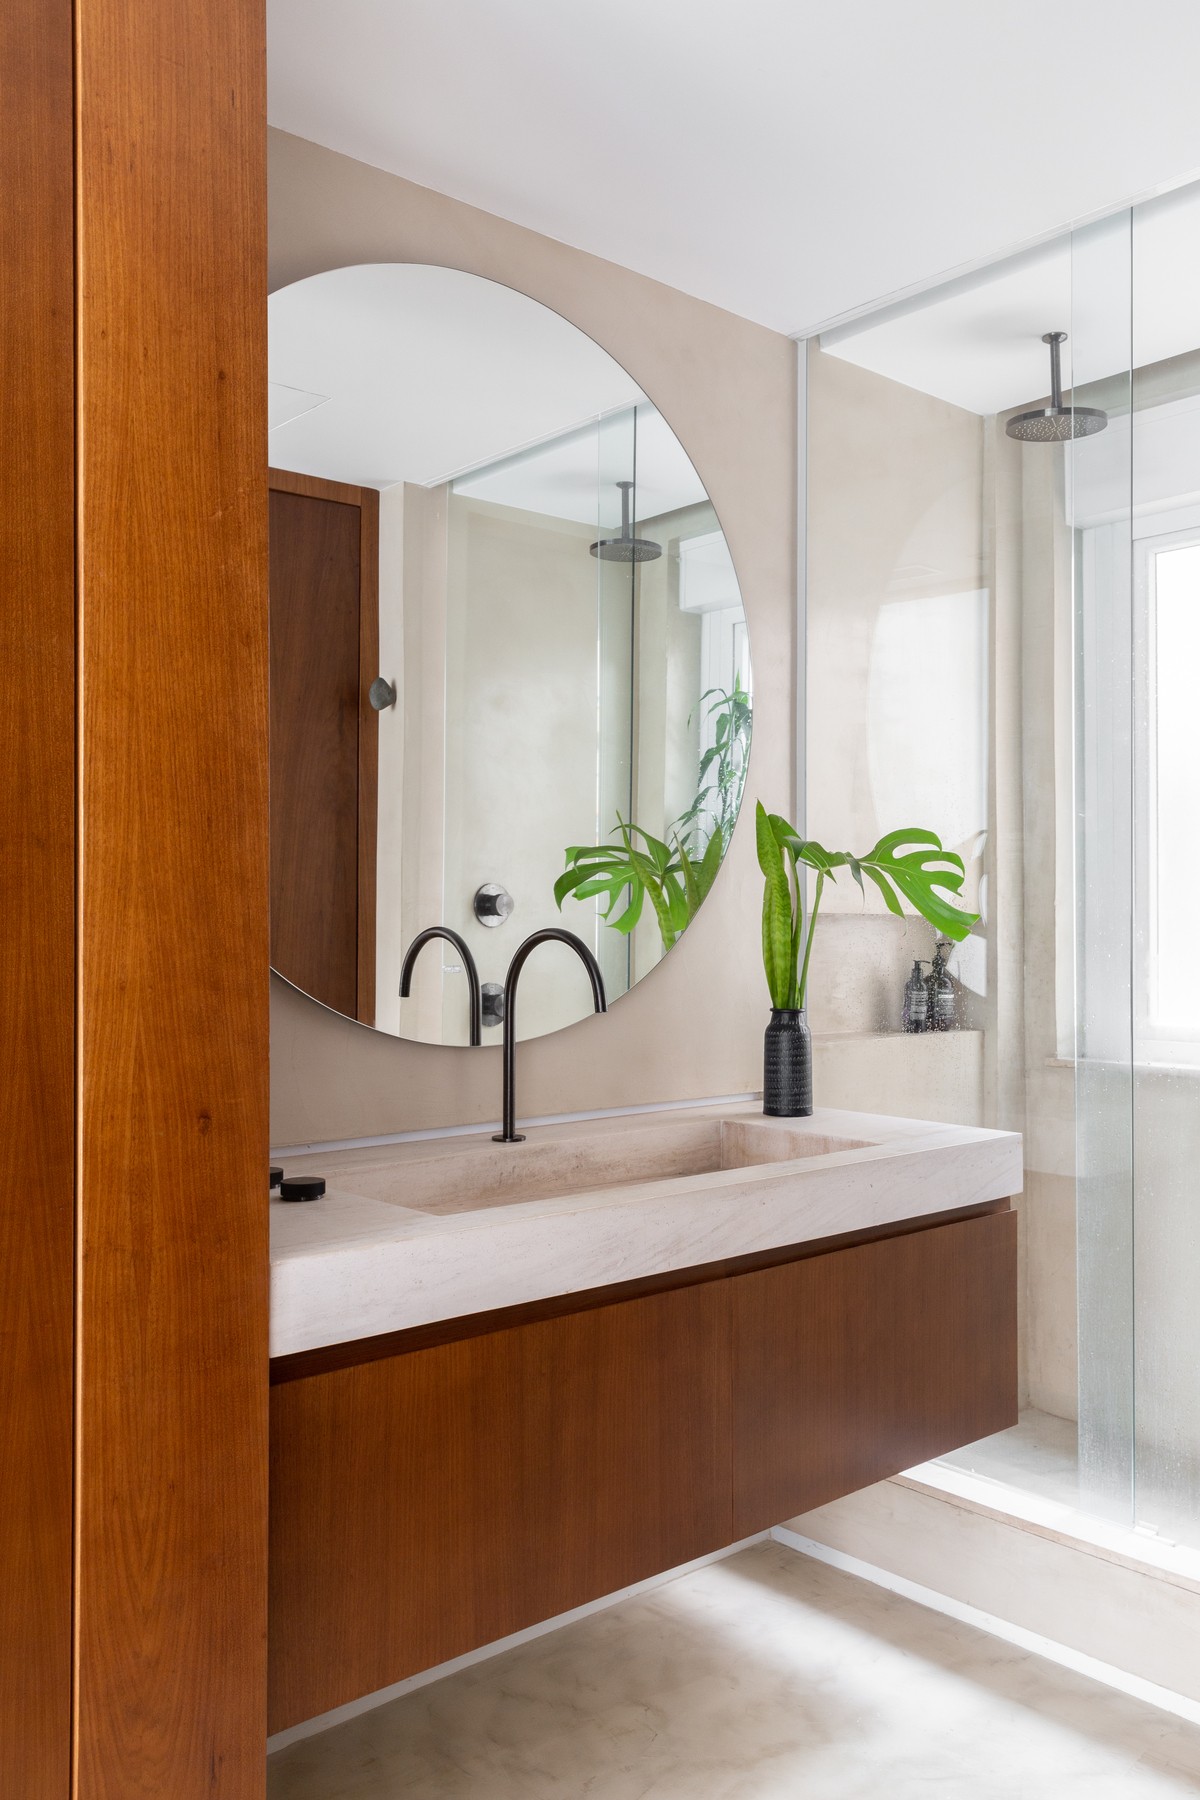 BANHEIRO | O espelho redondo deixa o ambiente mais moderno, enquanto as plantas trazem a sensação de calmaria. Torneira é da Docol (Foto: Andre Mortatti / Divulgação)